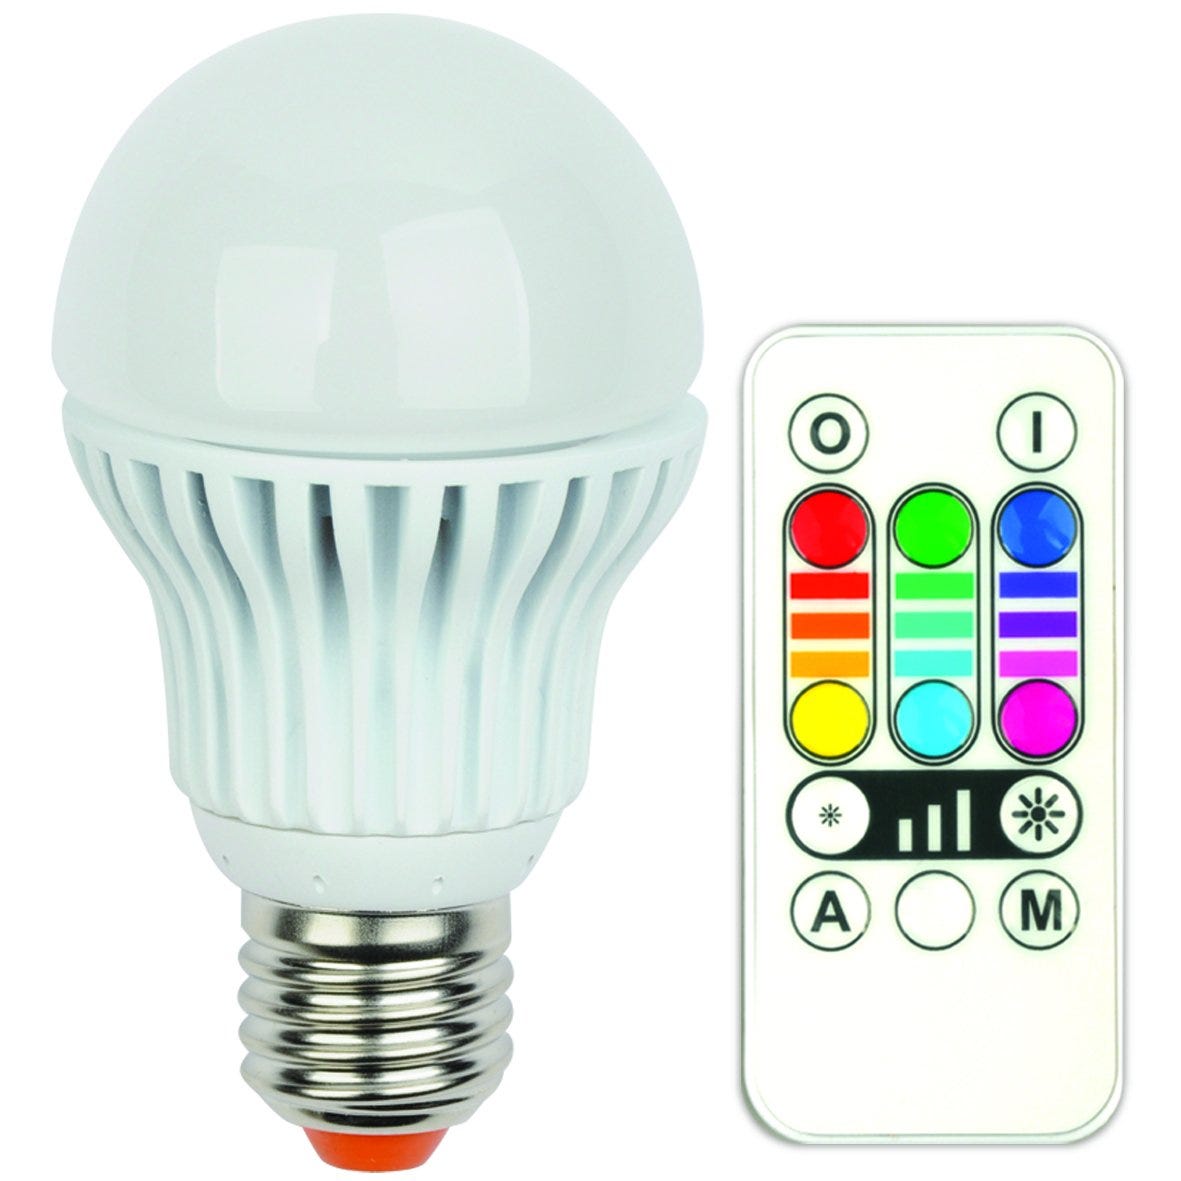 Jedi - LED A60 E27, lampadina LED sistema RGB con telecomando, misure: 6 x  6 x 11 cm